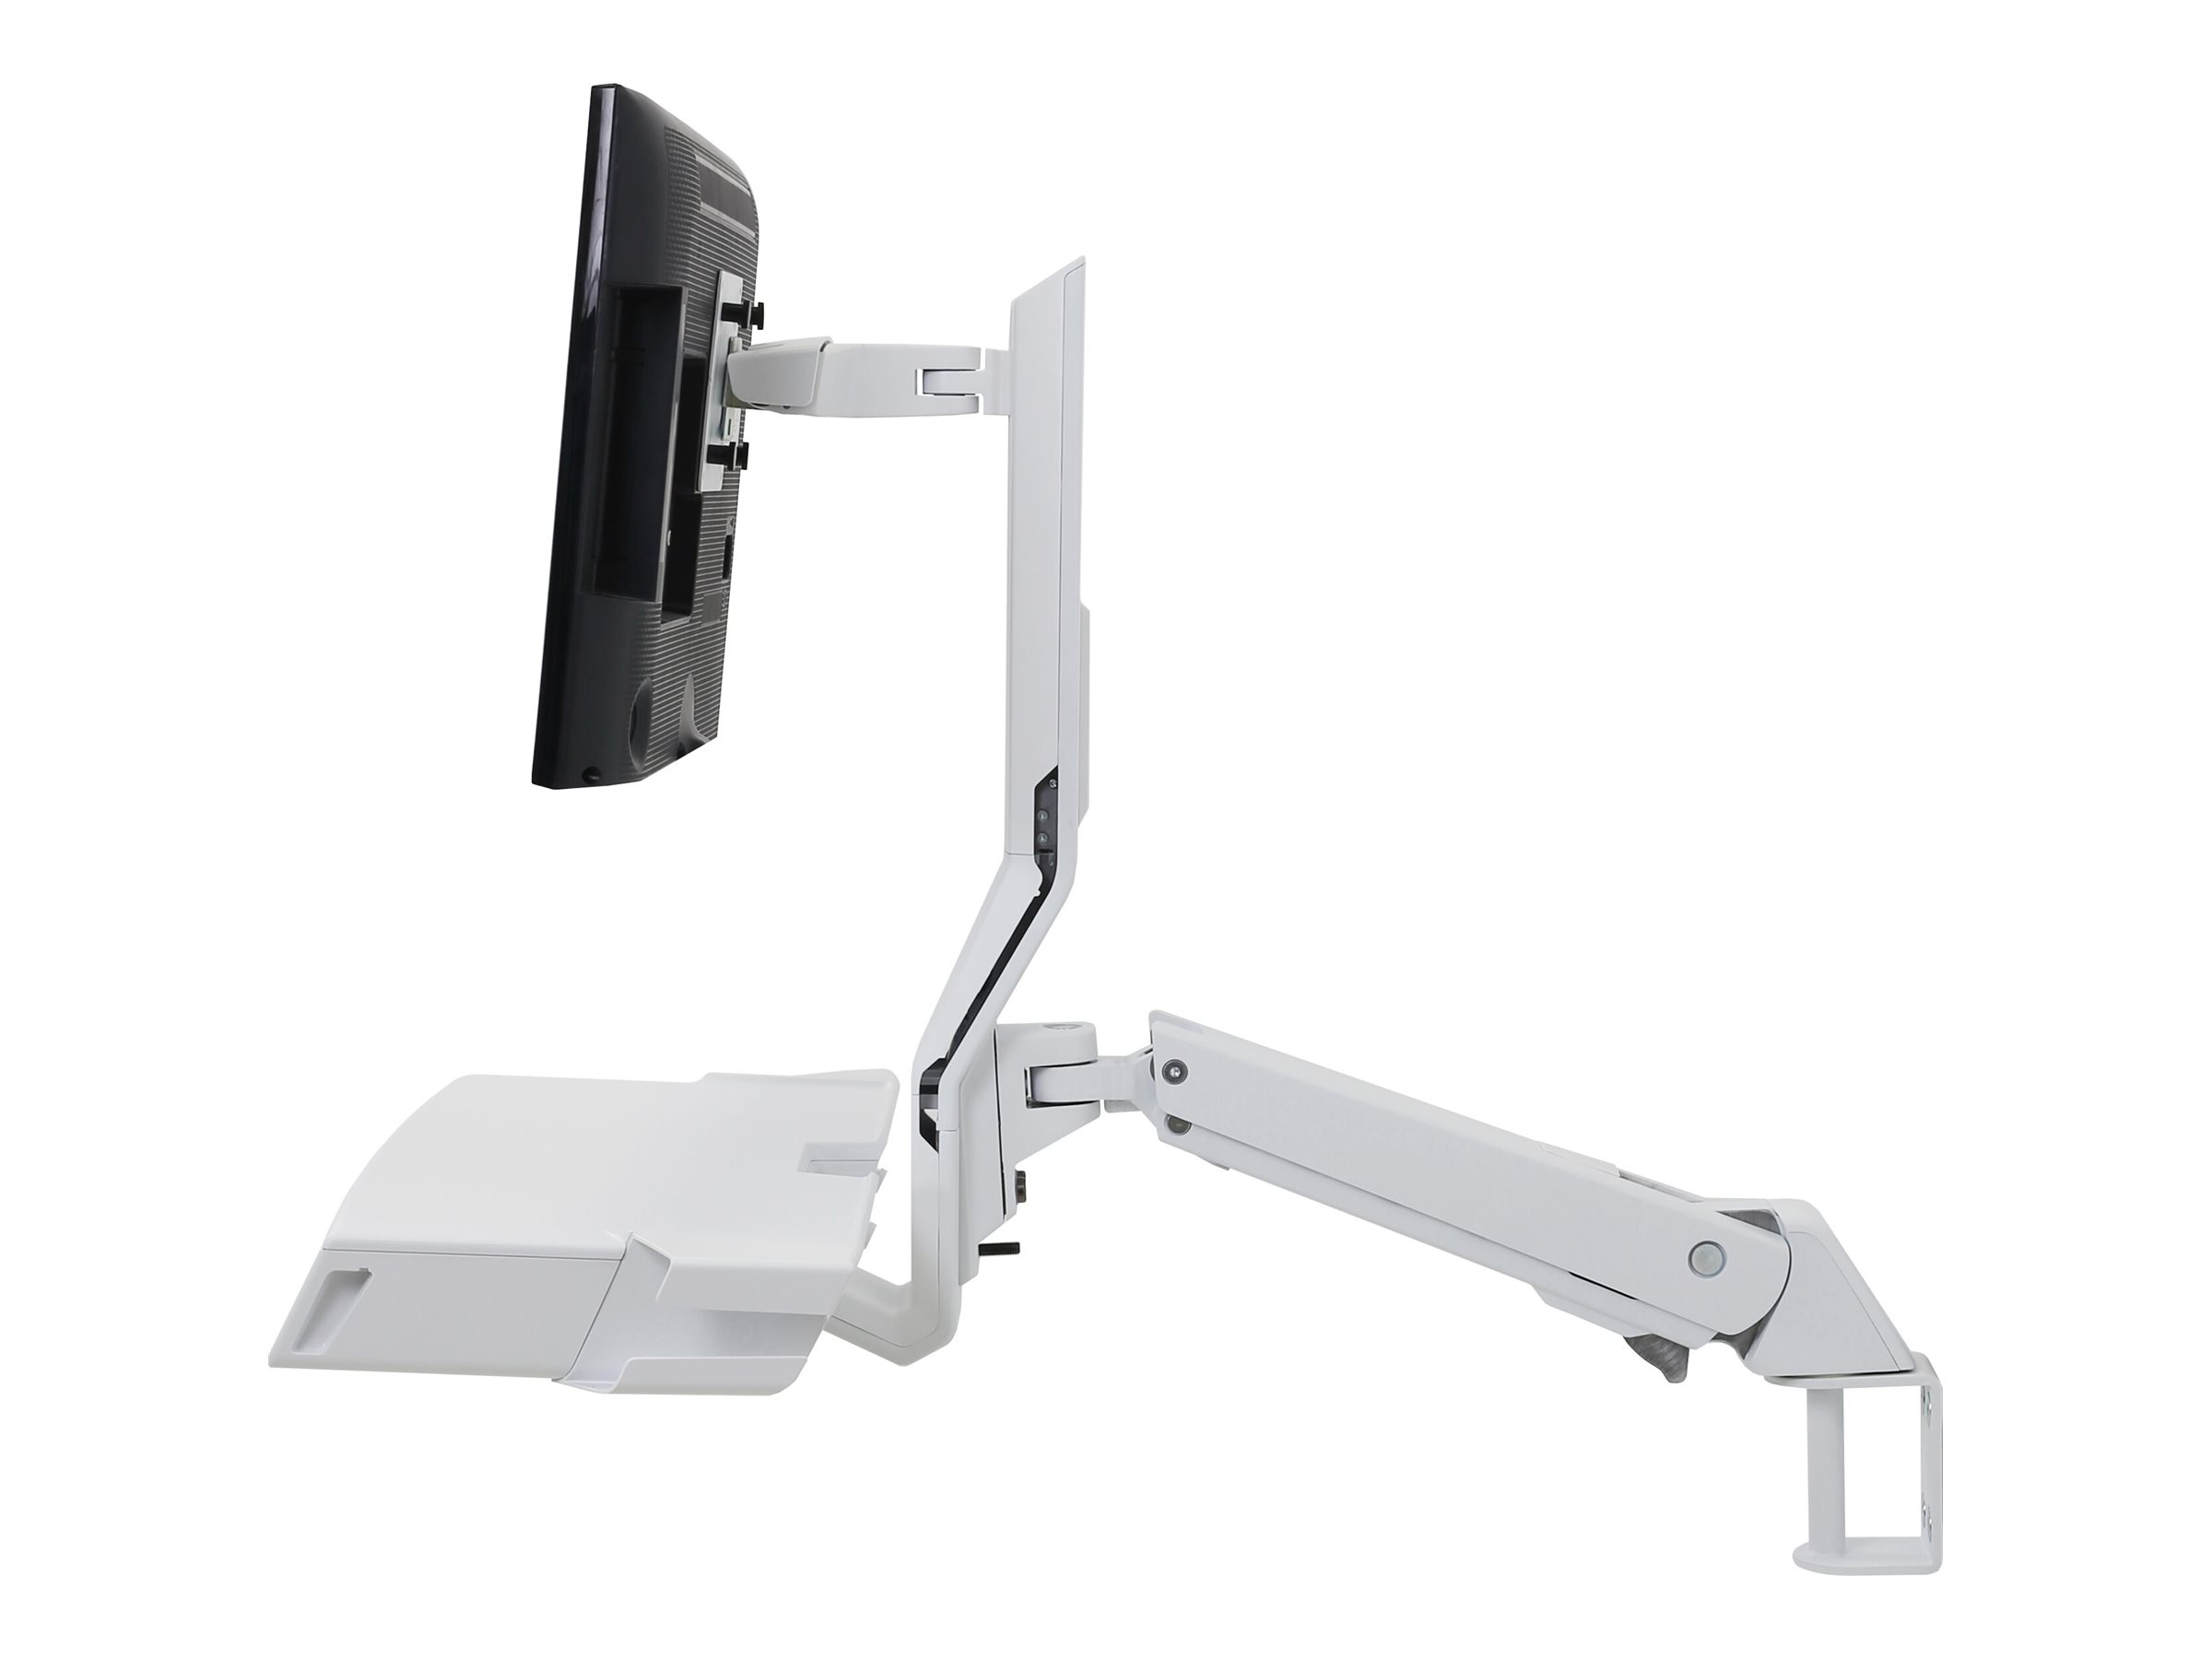 Ergotron Sit-Stand Combo Arm - Kit de montage (repose-poignets, support de fixation murale, fixation pour écran, kit de support de montage de piste, plateau de souris coulissant, bras combiné, surface de travail avec plateau pour clavier, support pour scanner et souris) - Technologie brevetée Constant Force - pour écran LCD/équipement PC - médical - aluminium, plastique haute qualité - blanc - Taille d'écran : jusqu'à 24 pouces - 45-583-216 - Accessoires pour scanner